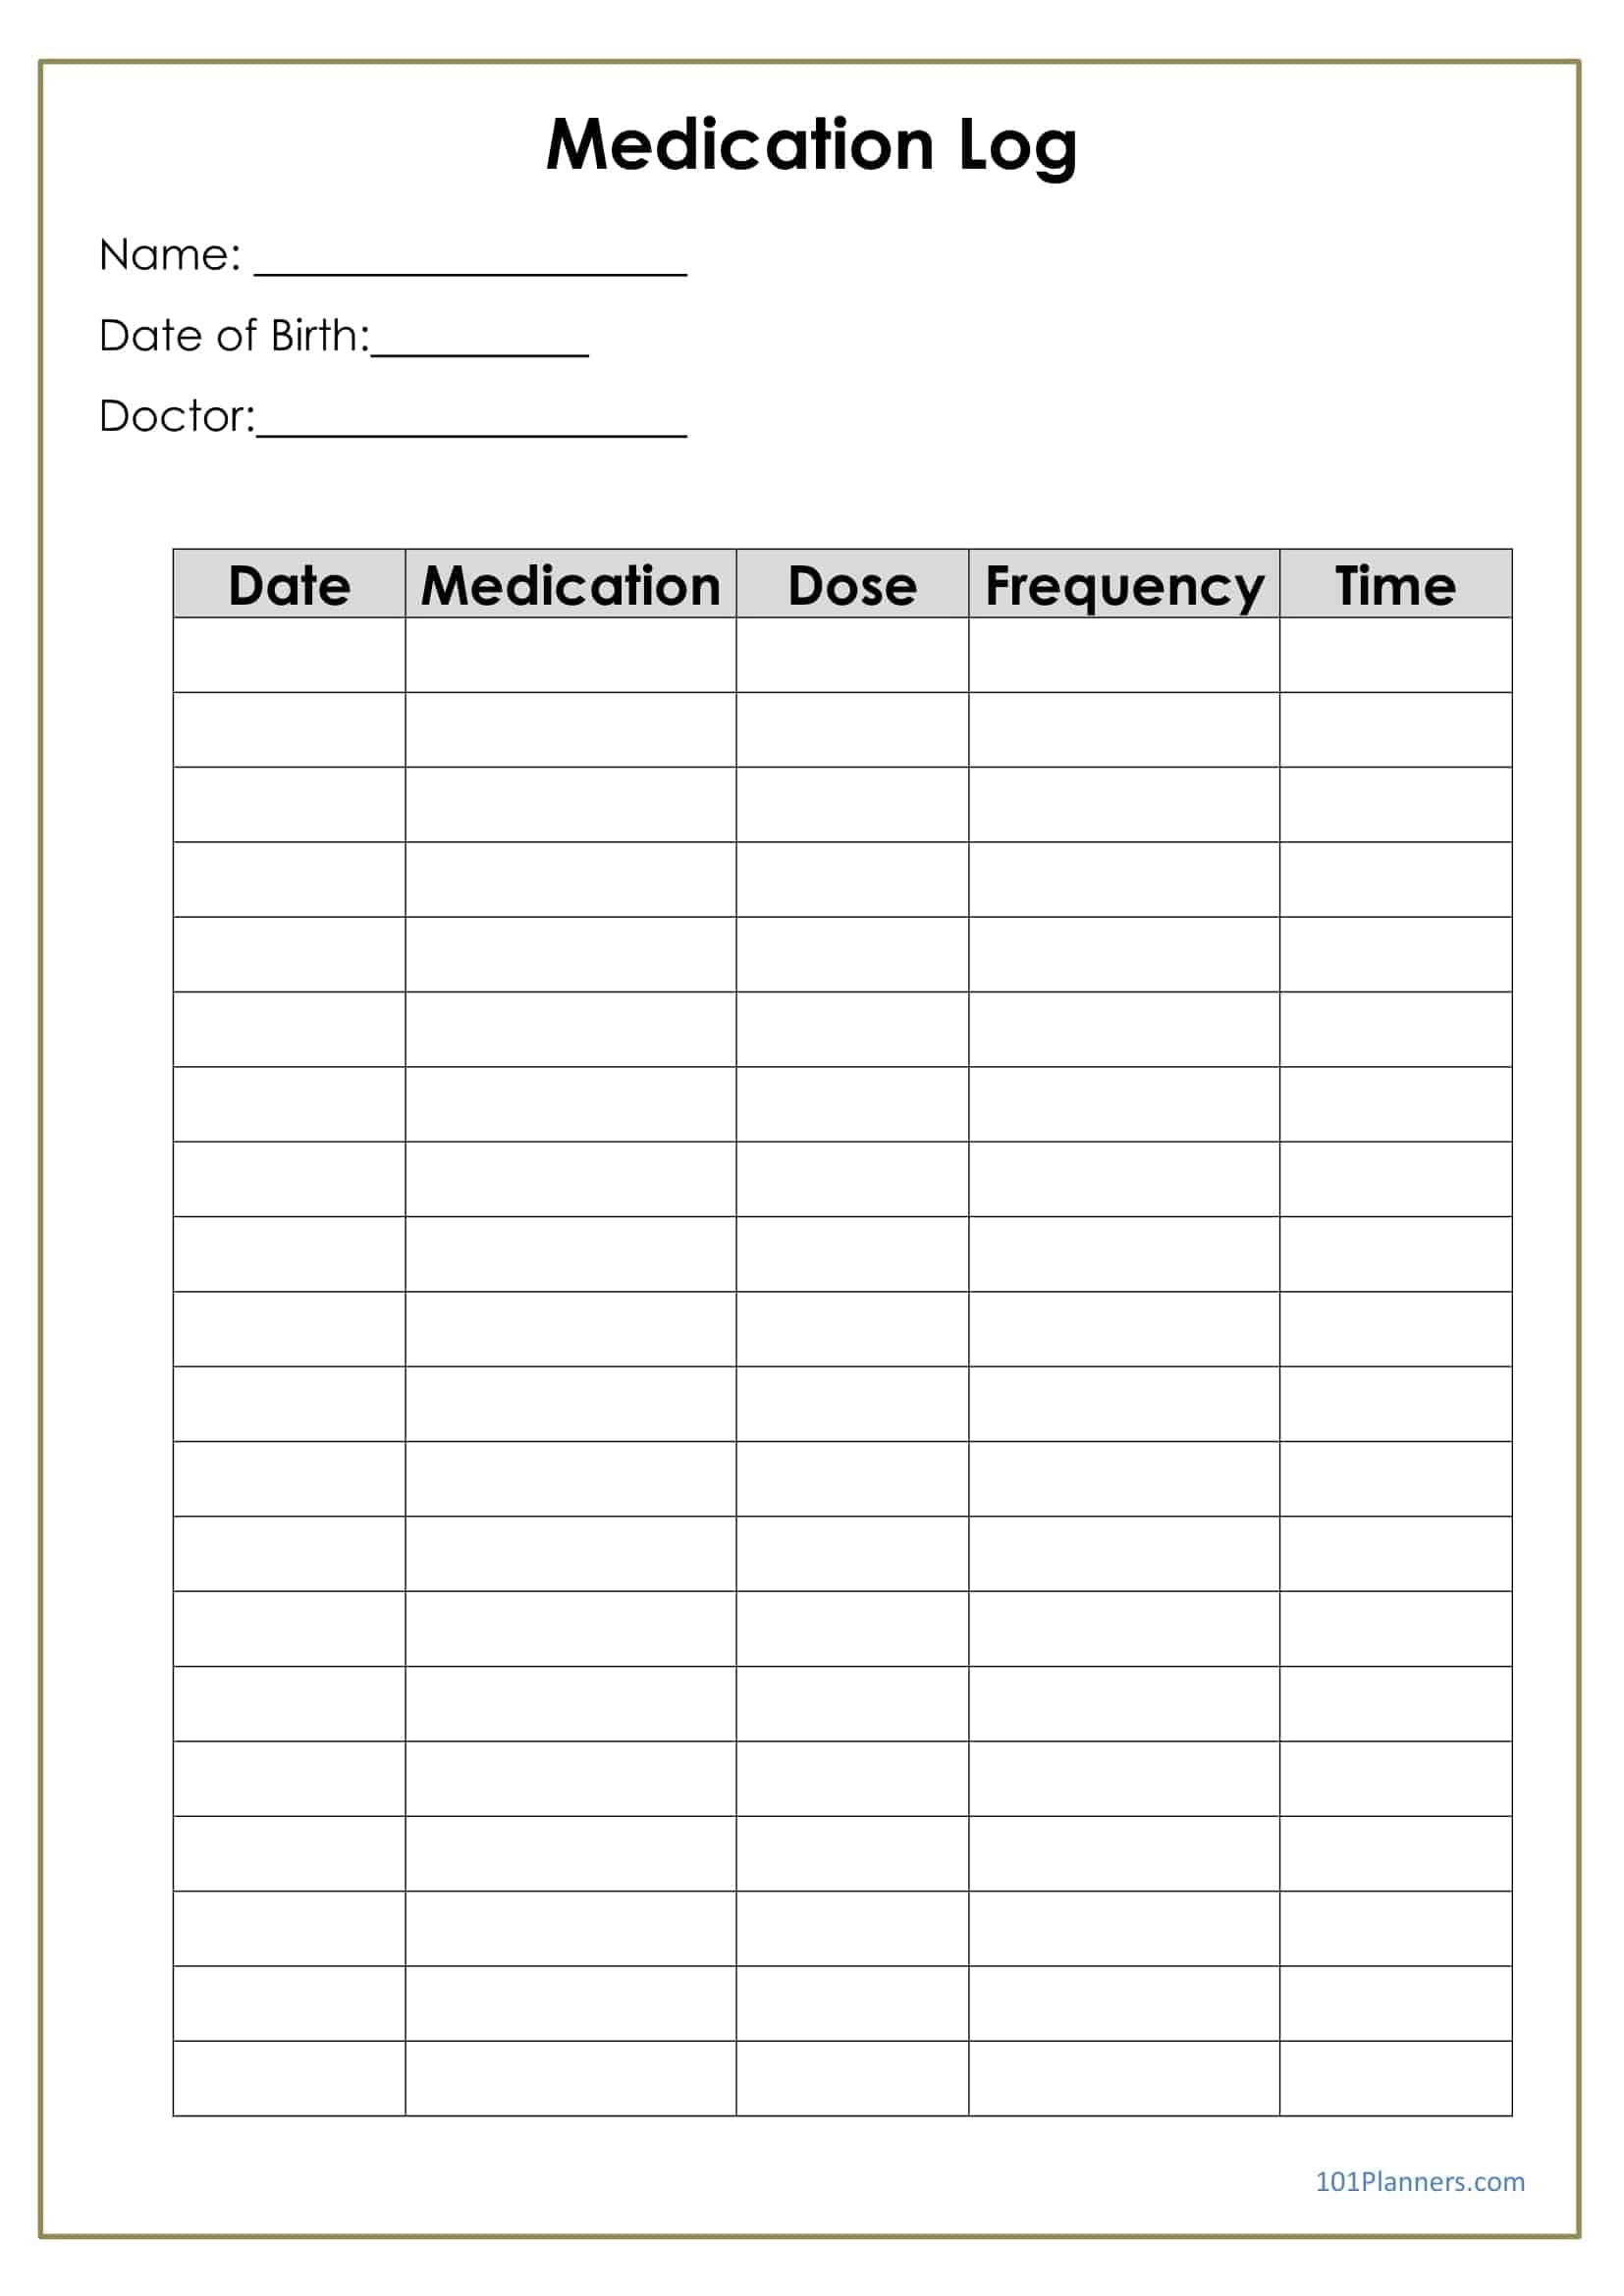 Medication Log - Free Printable Medication Log Sheet